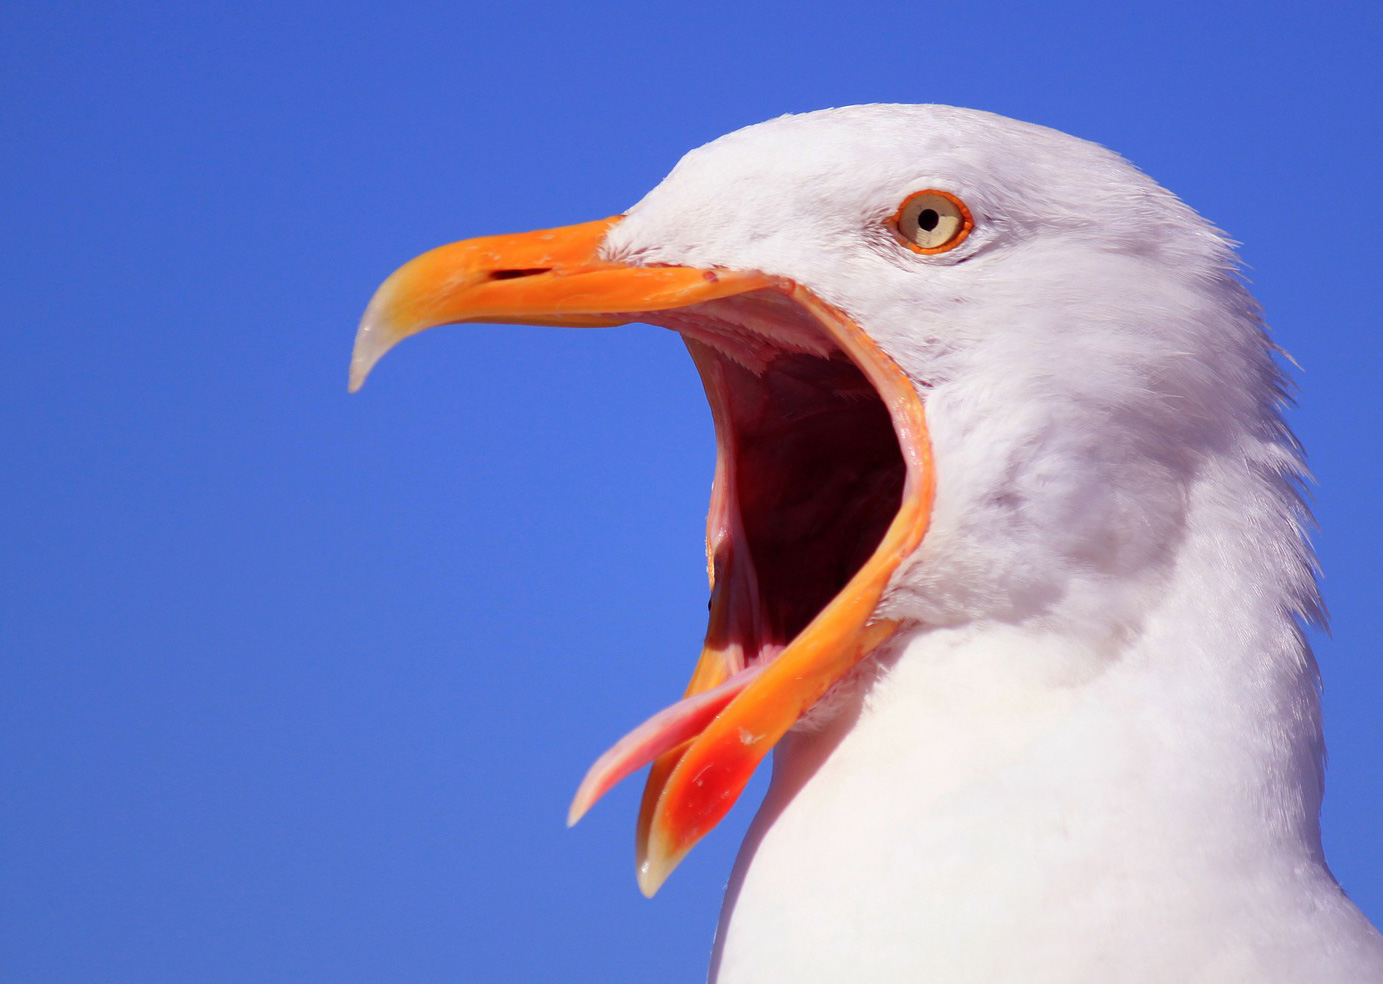 angry-seagulls